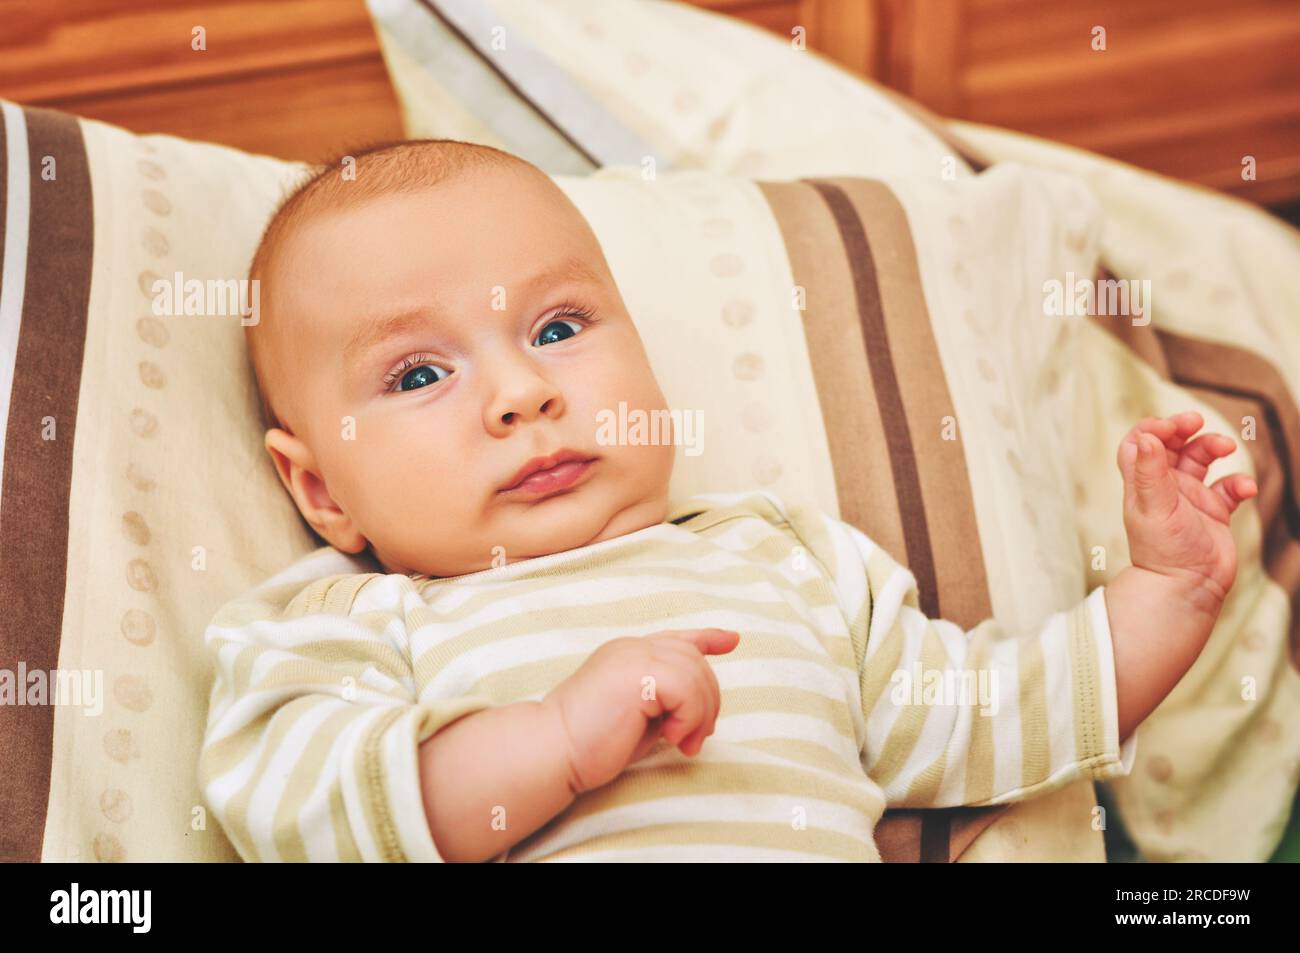 Gros plan portrait d'adorable bébé de 4-5 mois allongé sur un oreiller Banque D'Images